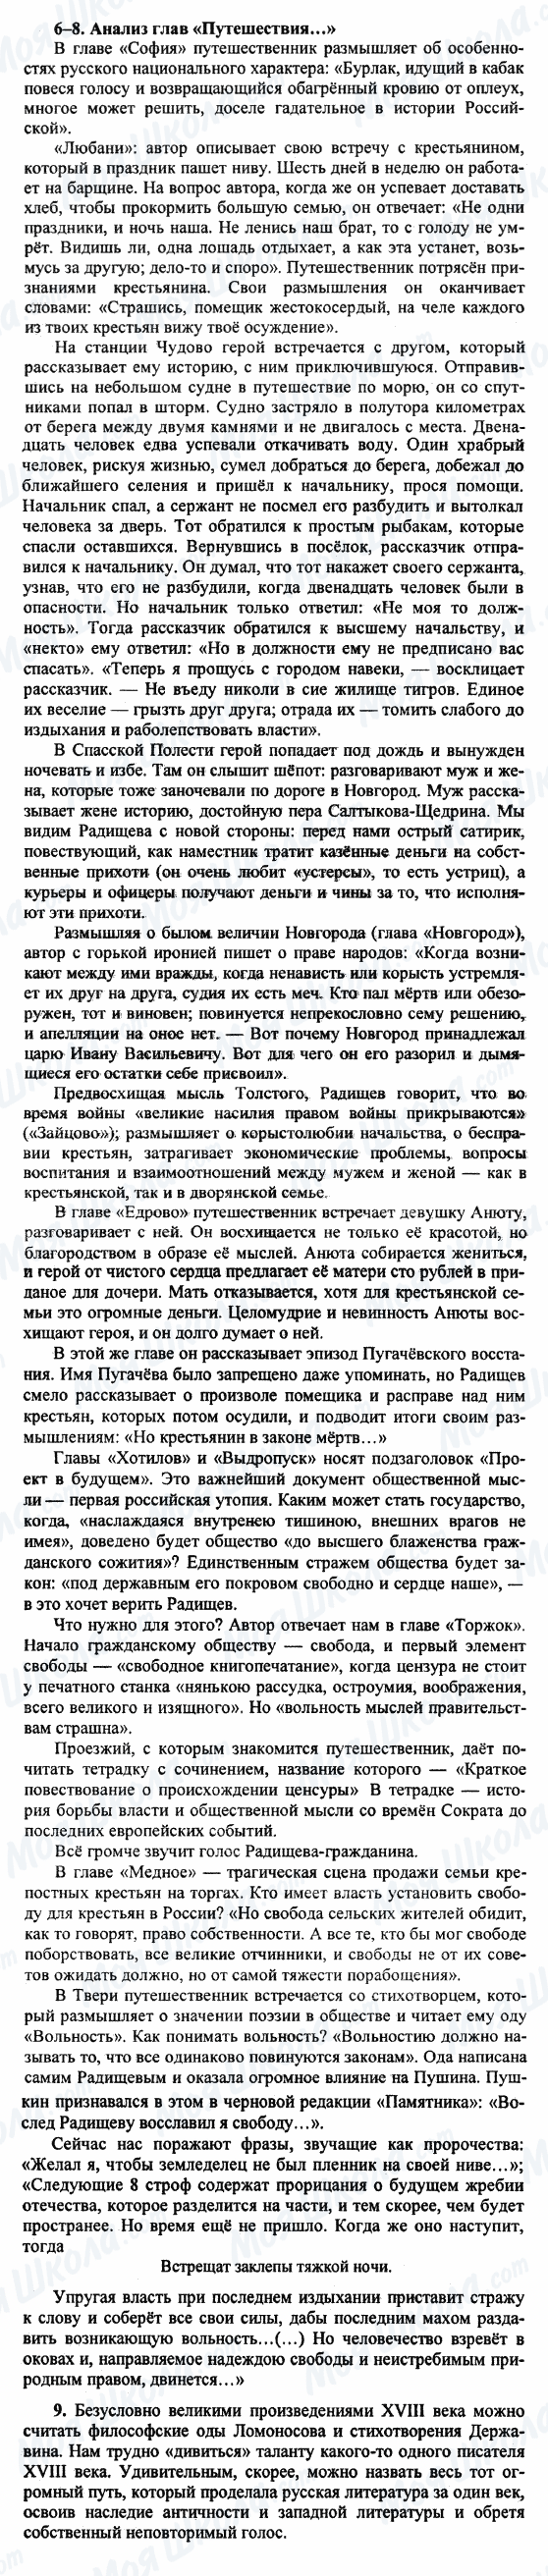 ГДЗ Російська література 9 клас сторінка 6-8-9